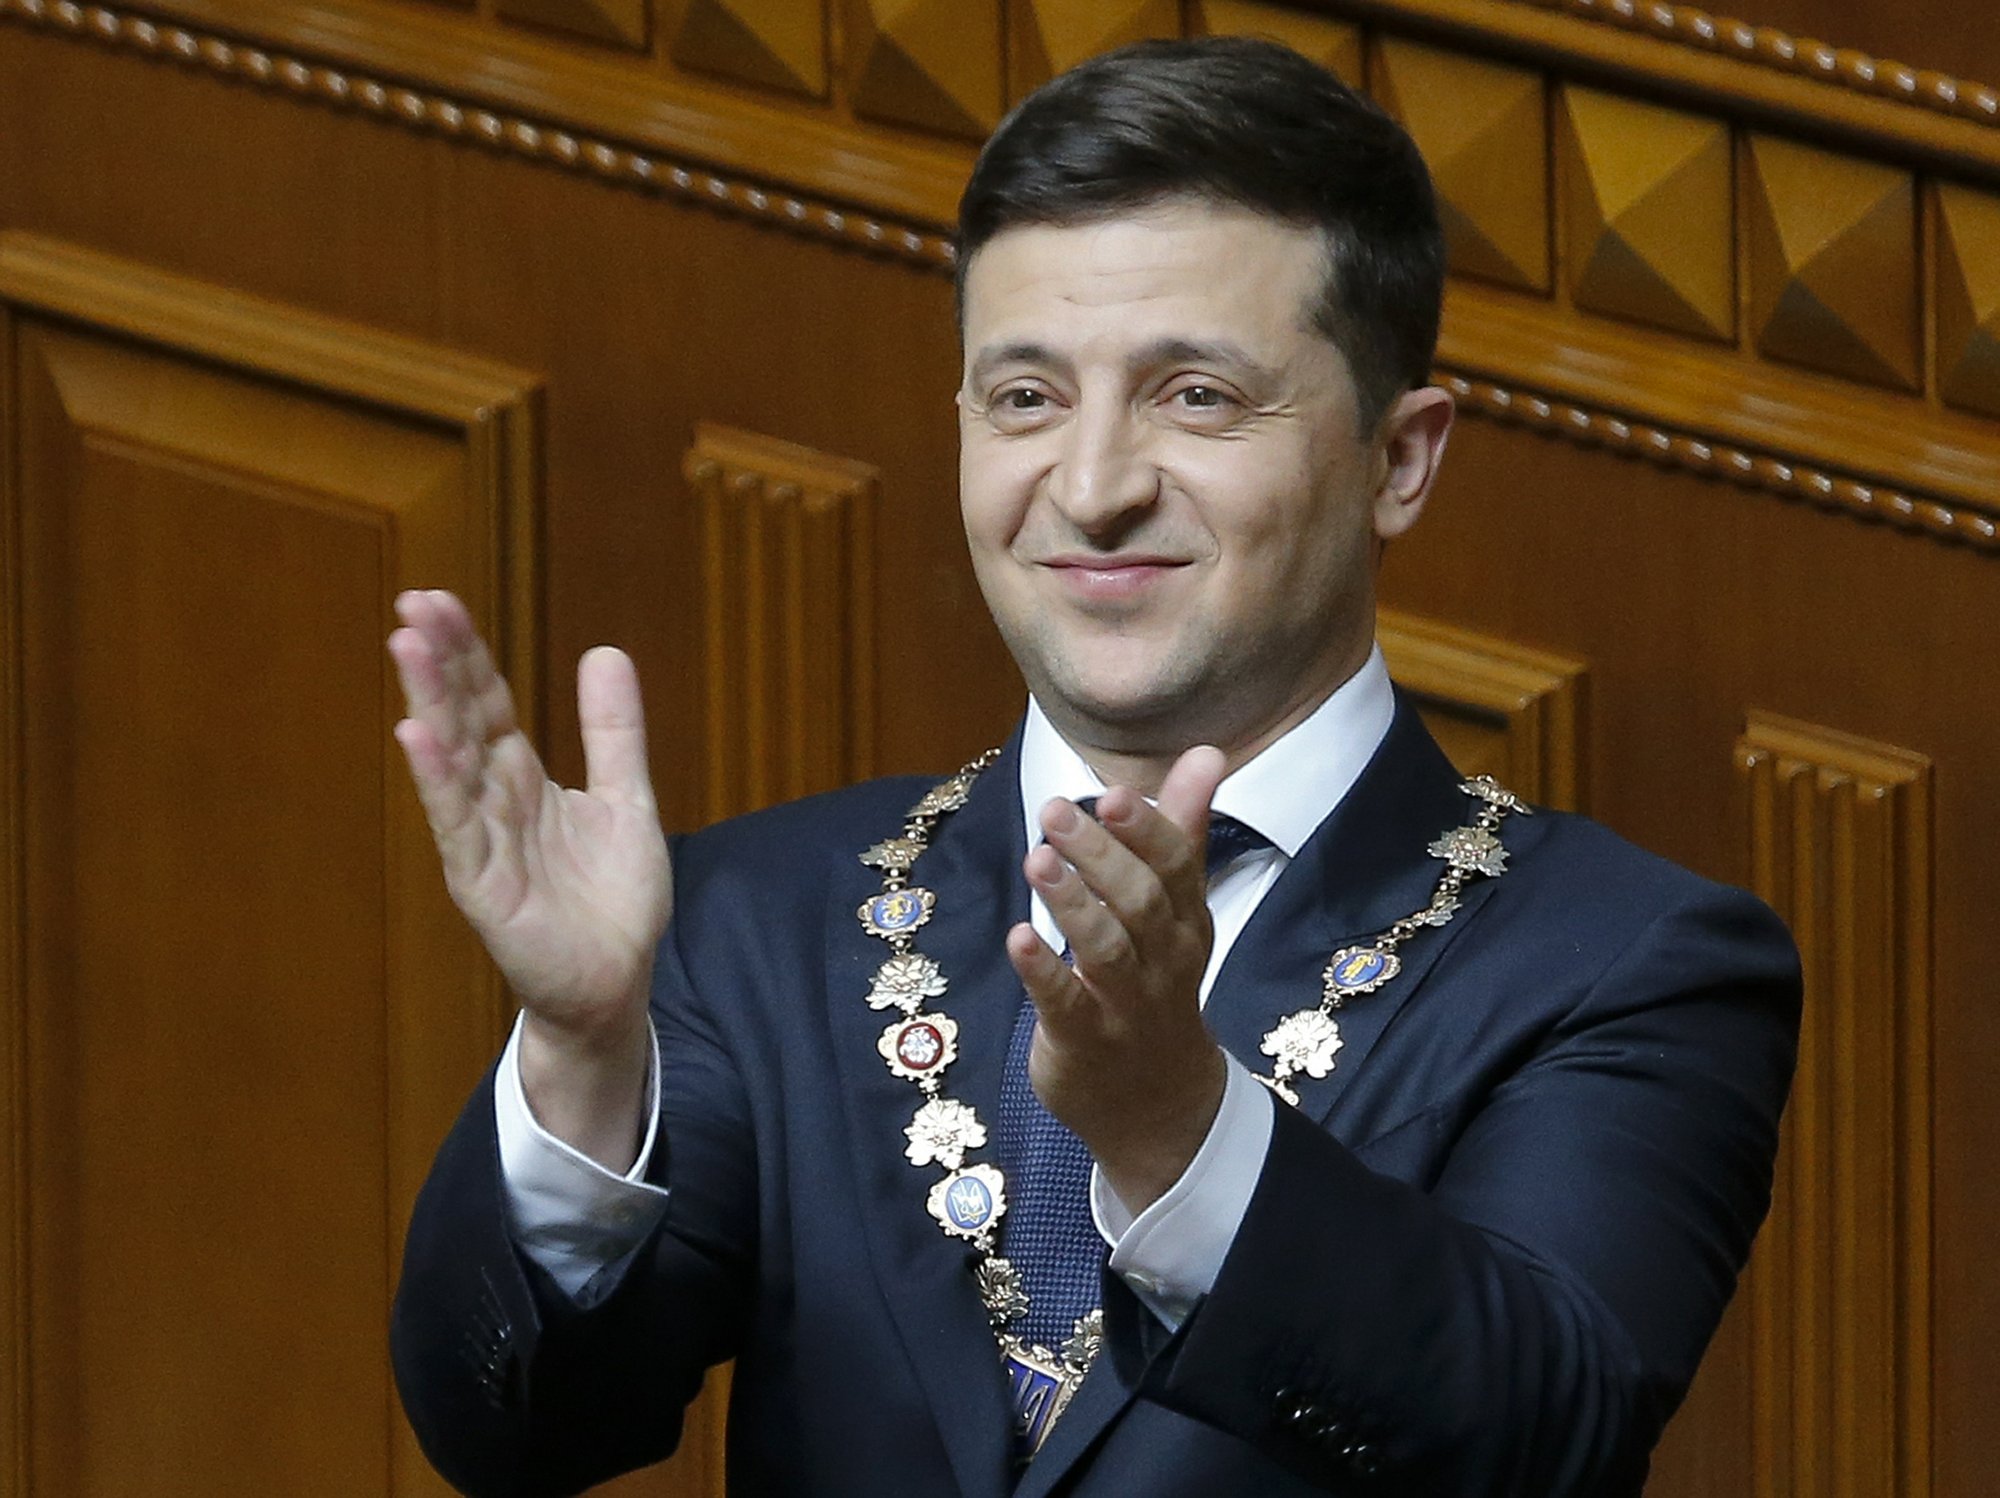 Ukraine’s new leader gets sworn in, dissolves parliament